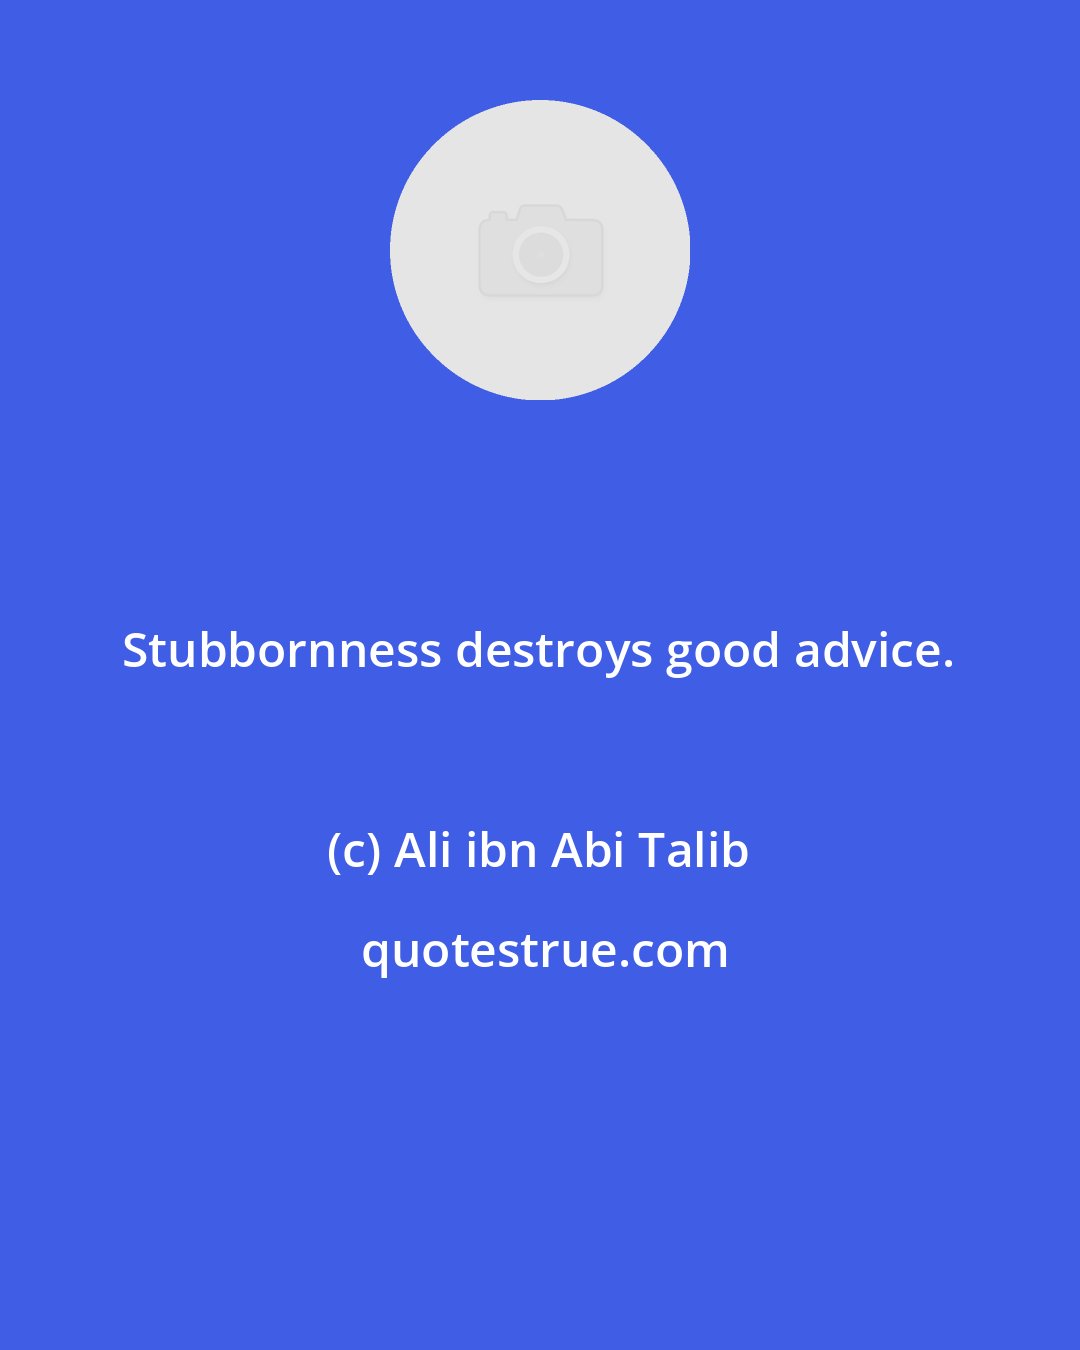 Ali ibn Abi Talib: Stubbornness destroys good advice.